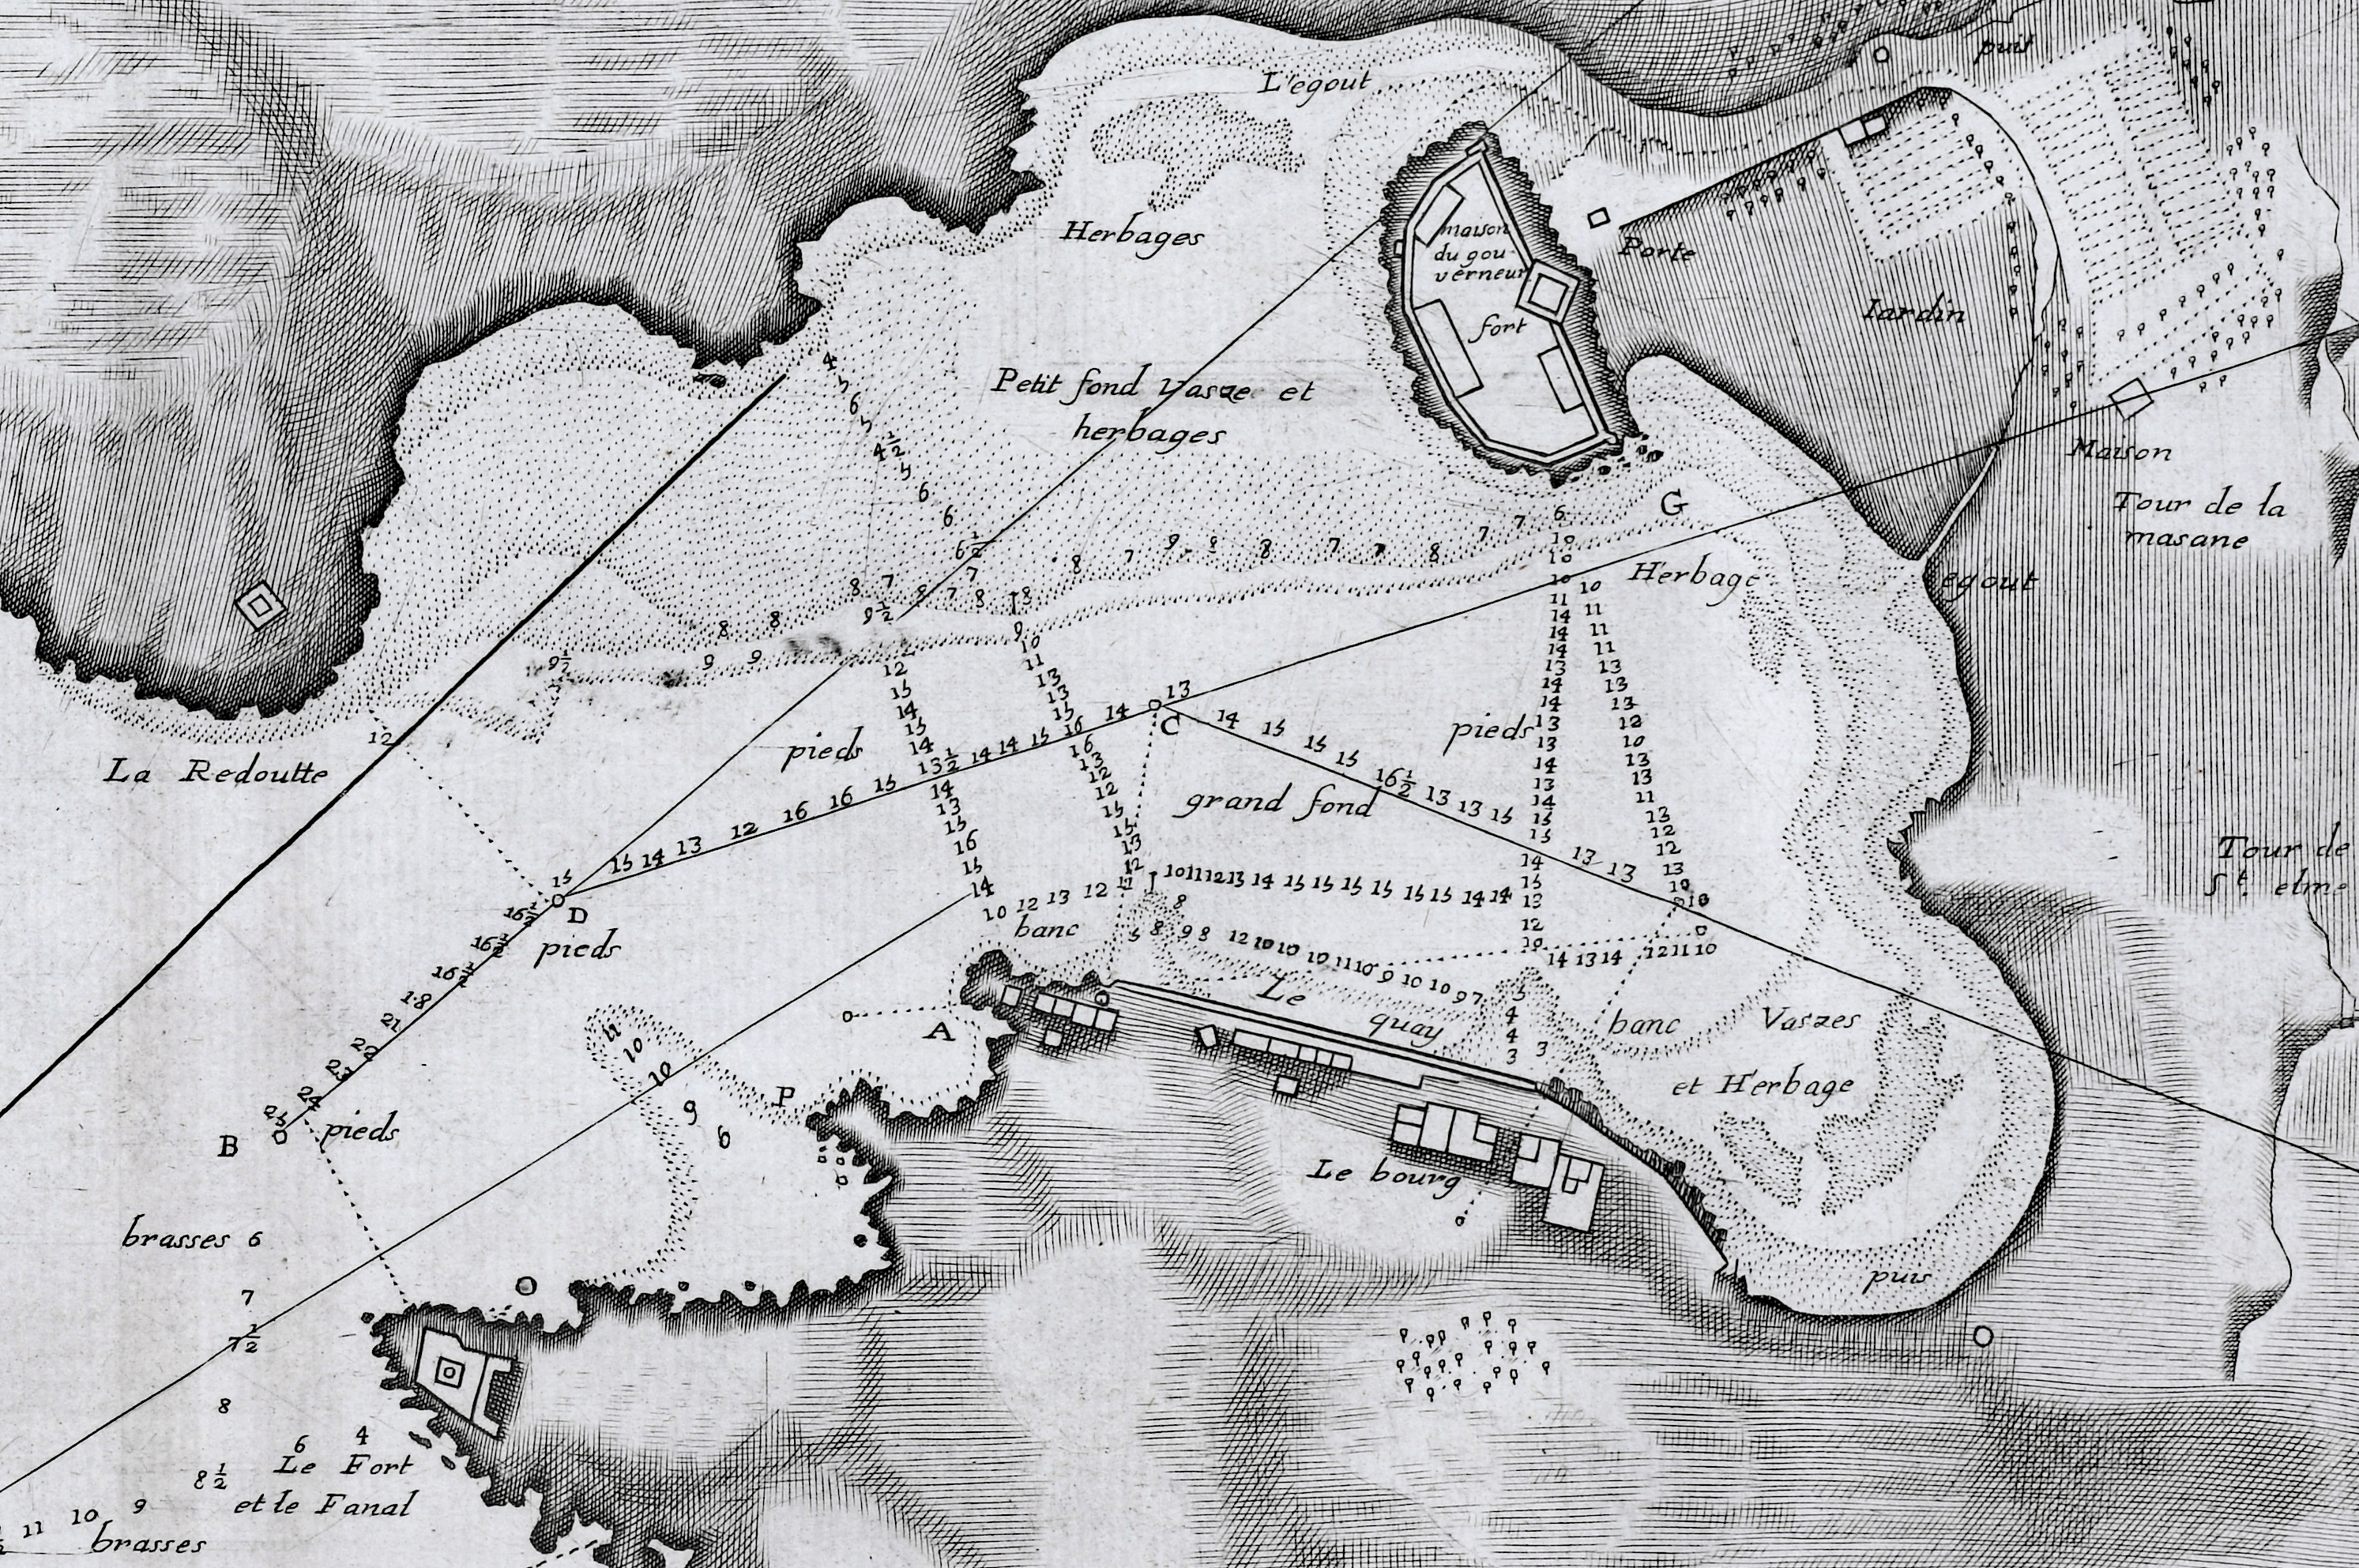 Plan du Portvendre en Rousillon. A hydrographic port plan for Port-Vendres, Frances by Jacques Ayrouard. 1746.